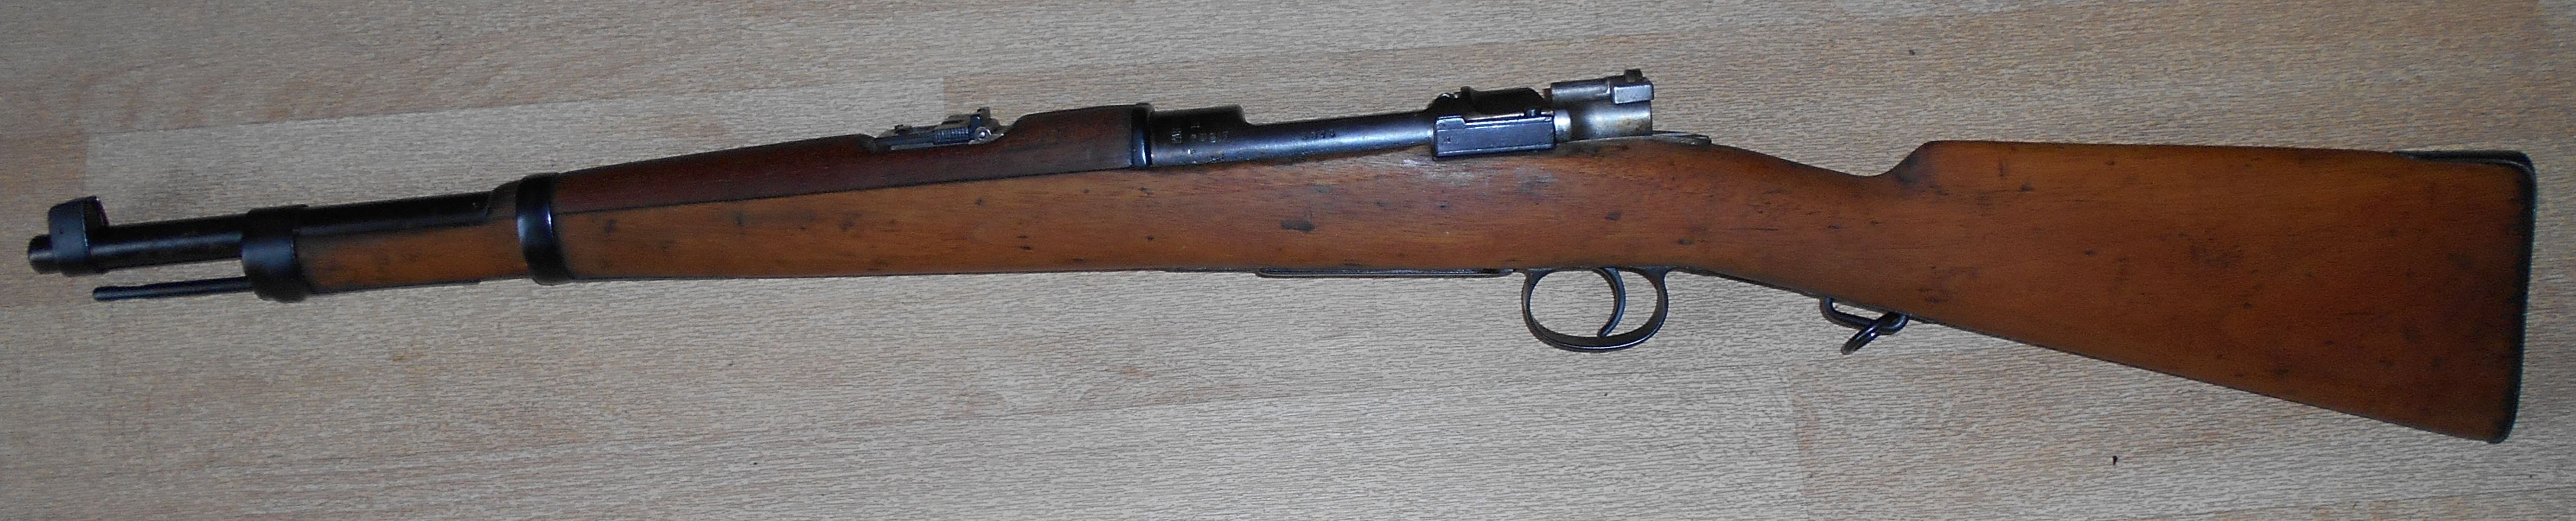 Mauser brsilien Mle 1894 (carabine)